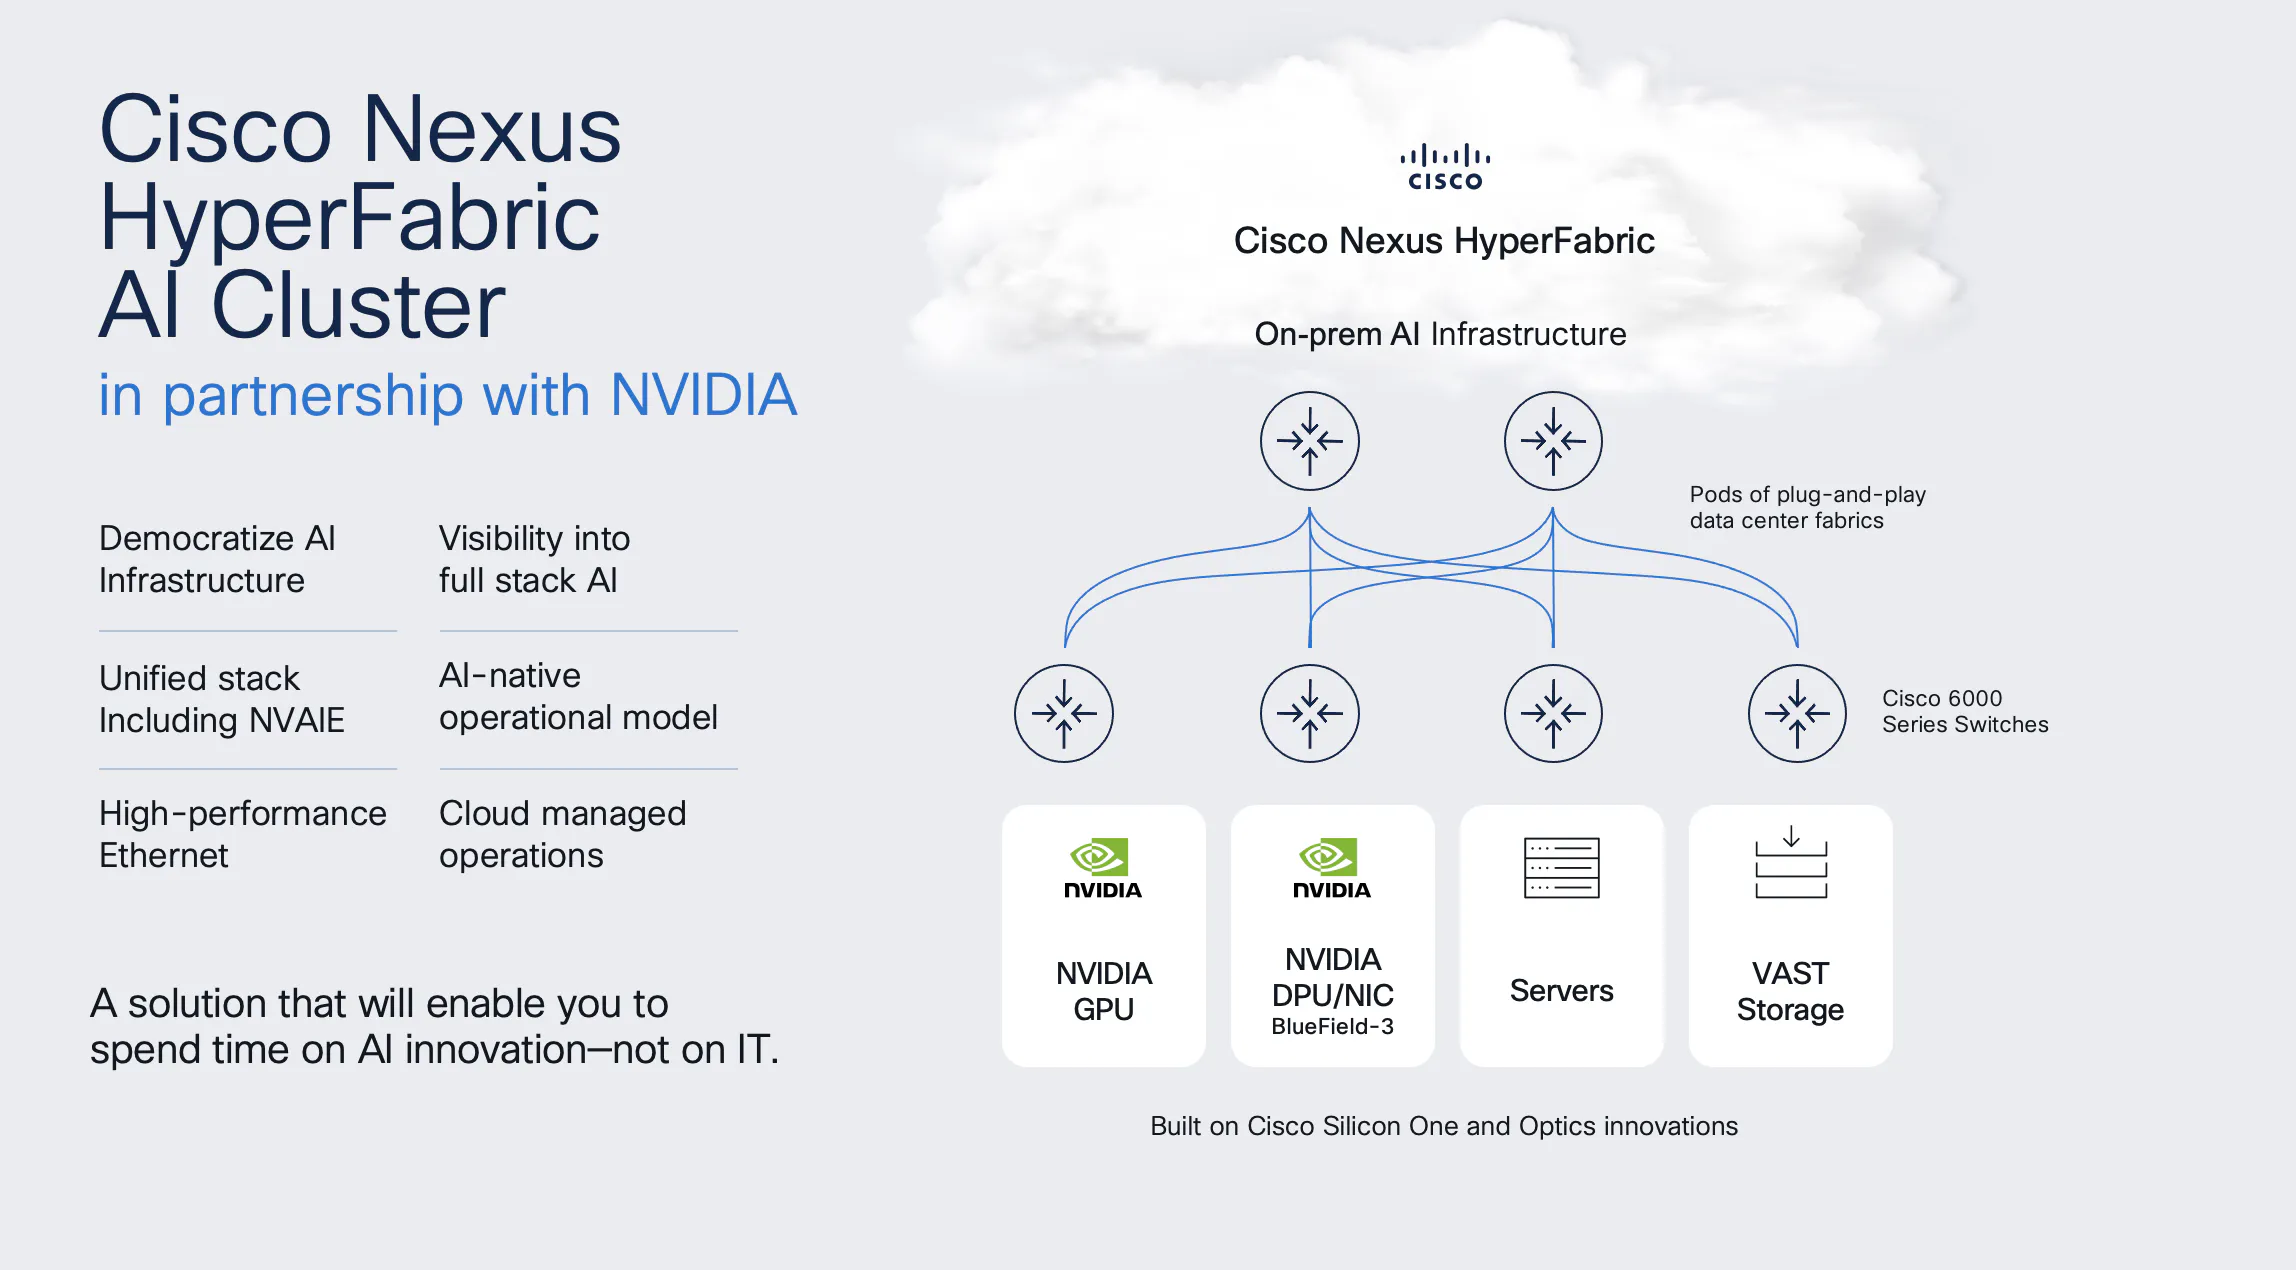 Cisco ra mắt giải pháp cụm AI đột phá, hợp tác với NVIDIA, tối ưu hóa trung tâm dữ liệu